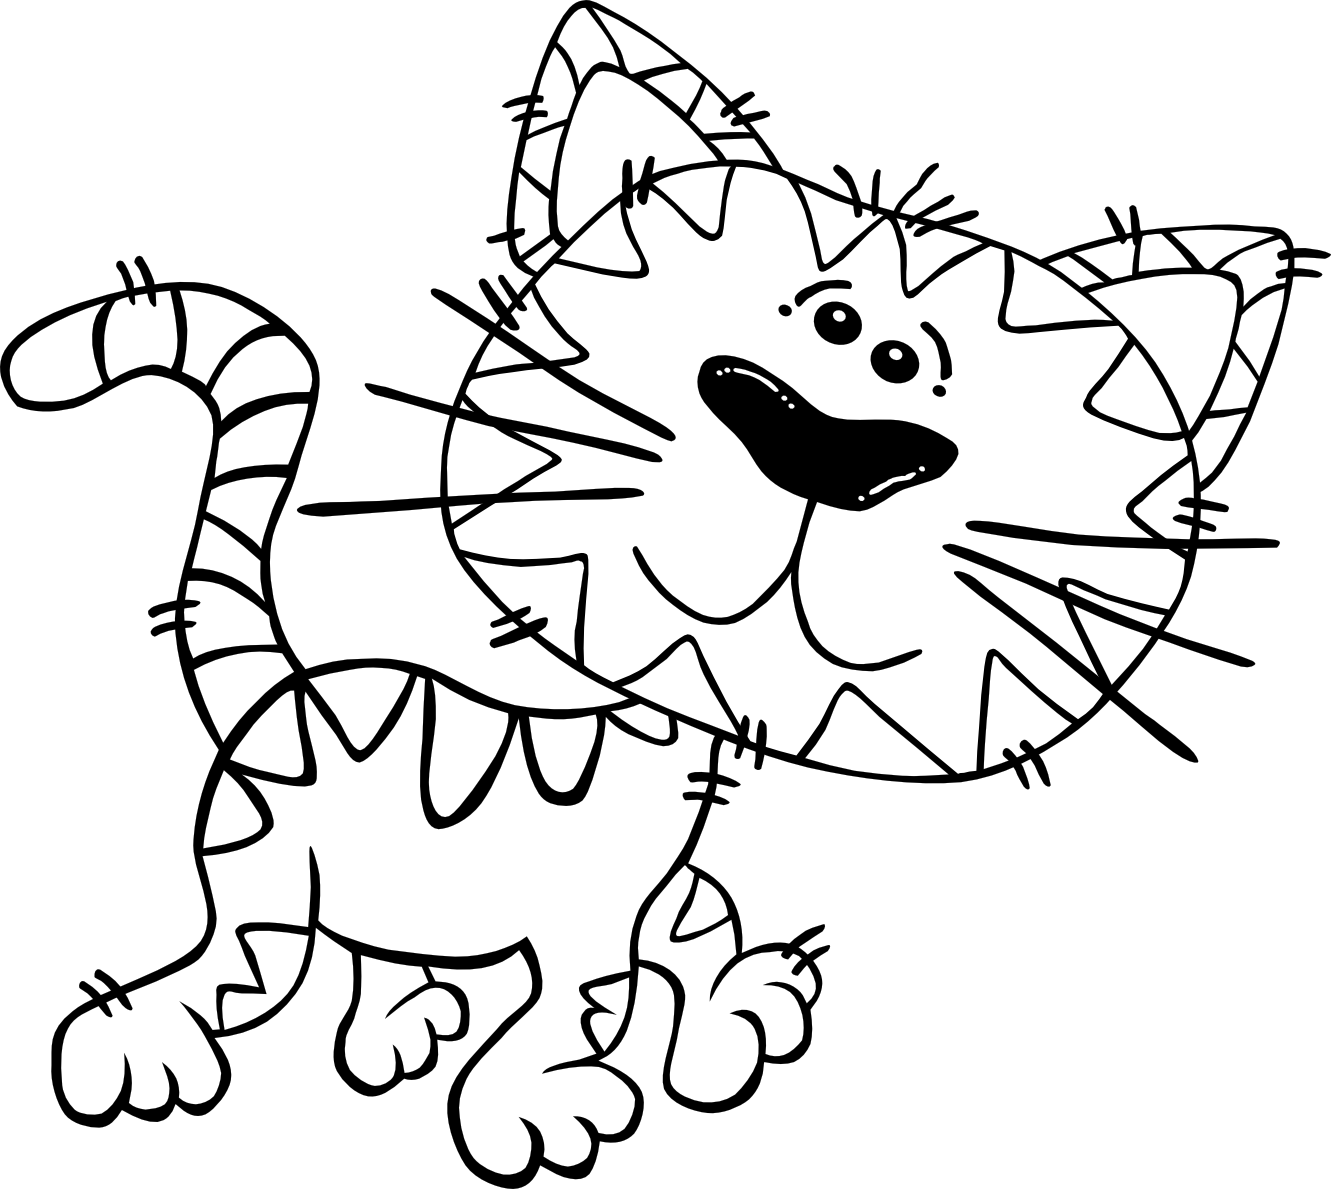 Cat Cartoon Drawings - Clipart library